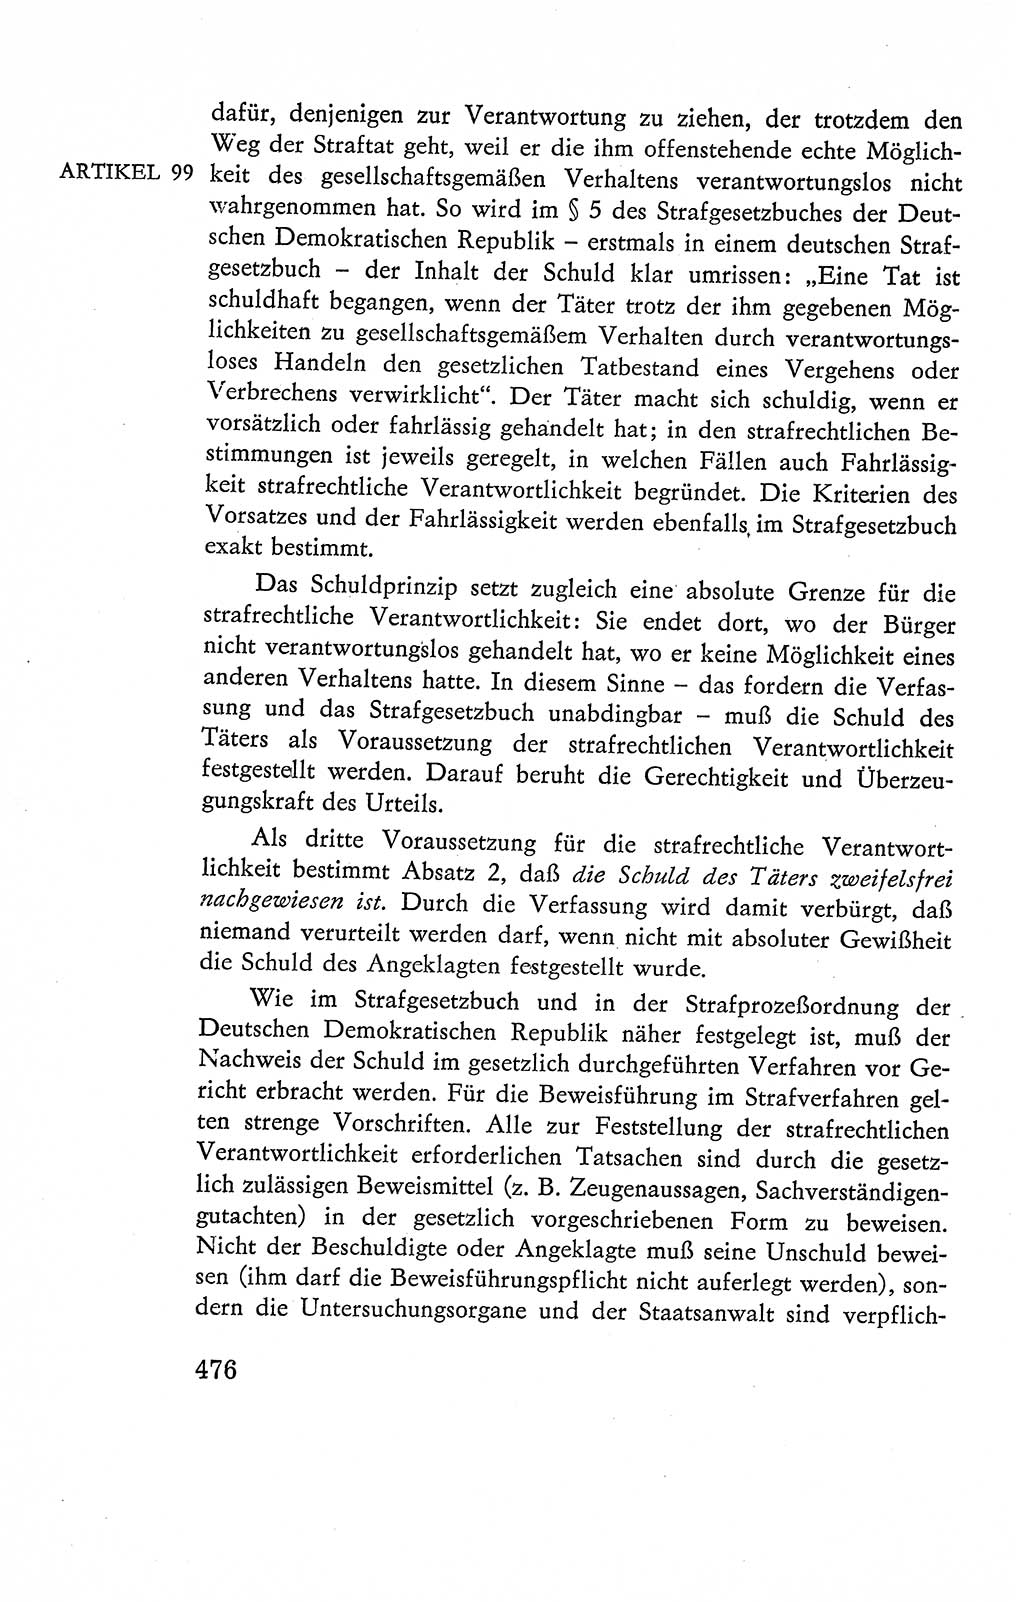 Verfassung der Deutschen Demokratischen Republik (DDR), Dokumente, Kommentar 1969, Band 2, Seite 476 (Verf. DDR Dok. Komm. 1969, Bd. 2, S. 476)